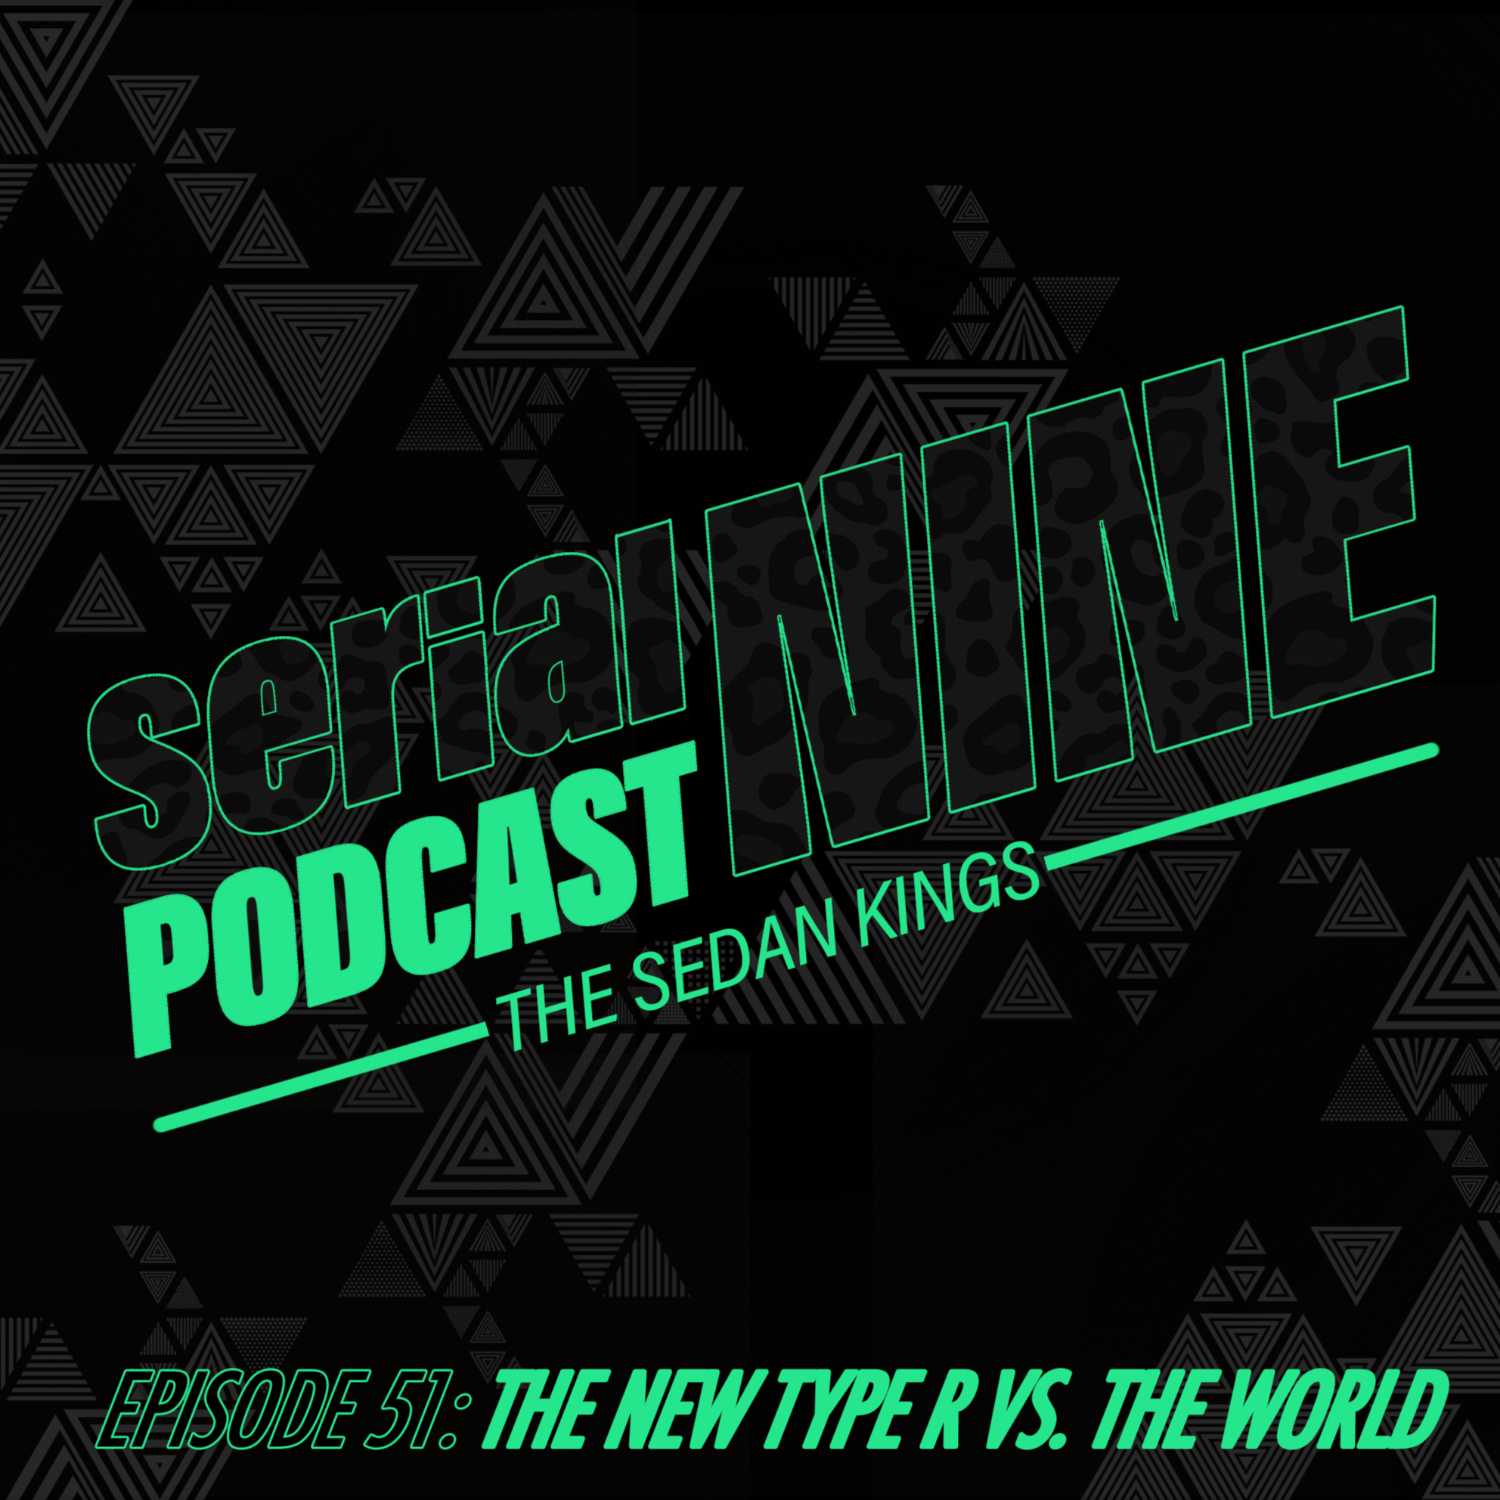 SerialPodcastNine Episode 51 The New Type R vs The World